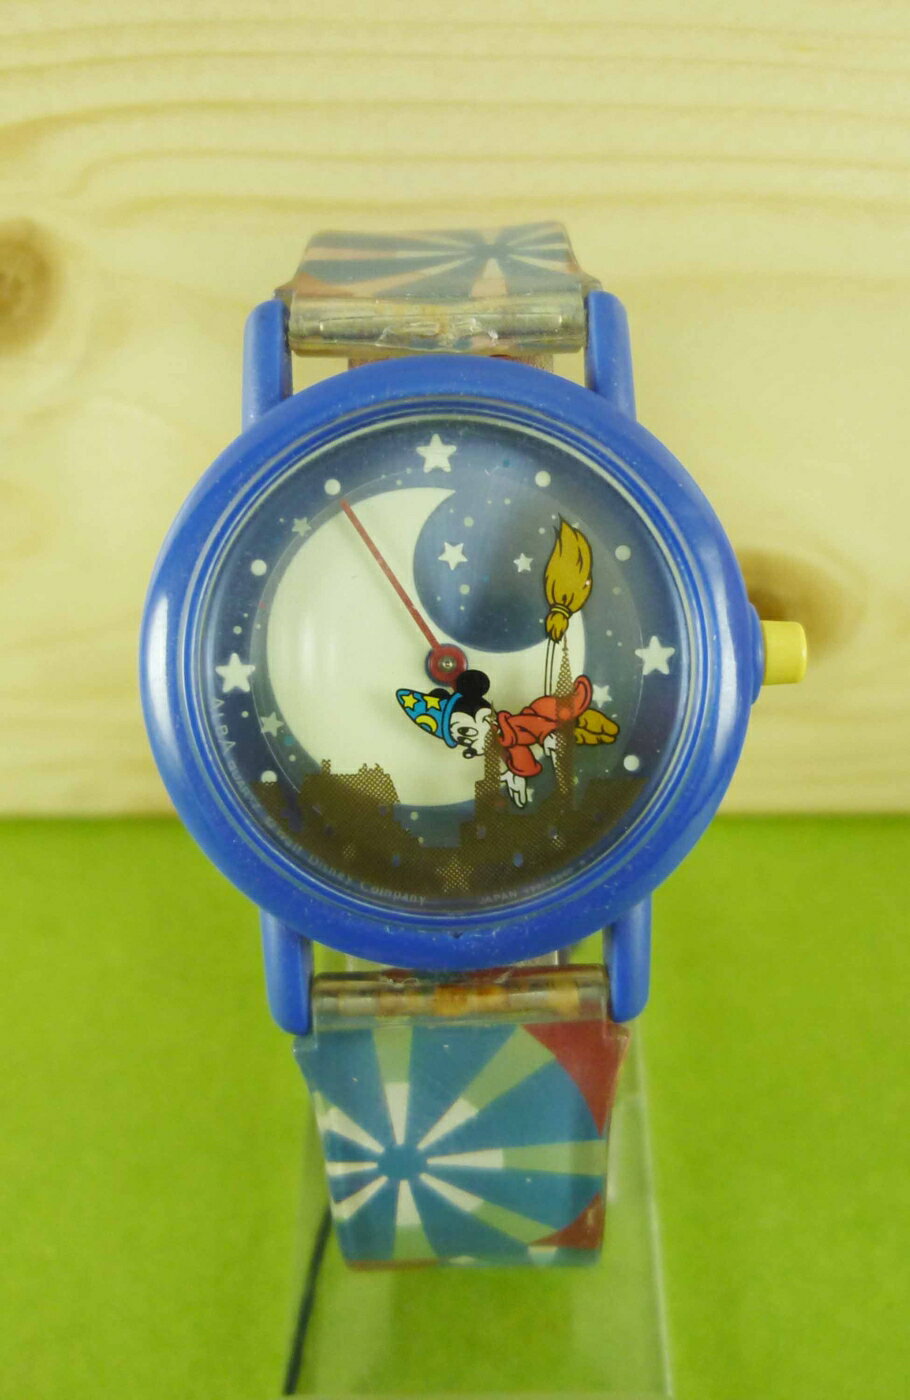 【震撼精品百貨】米奇/米妮 Micky Mouse 手錶 藍星空 震撼日式精品百貨